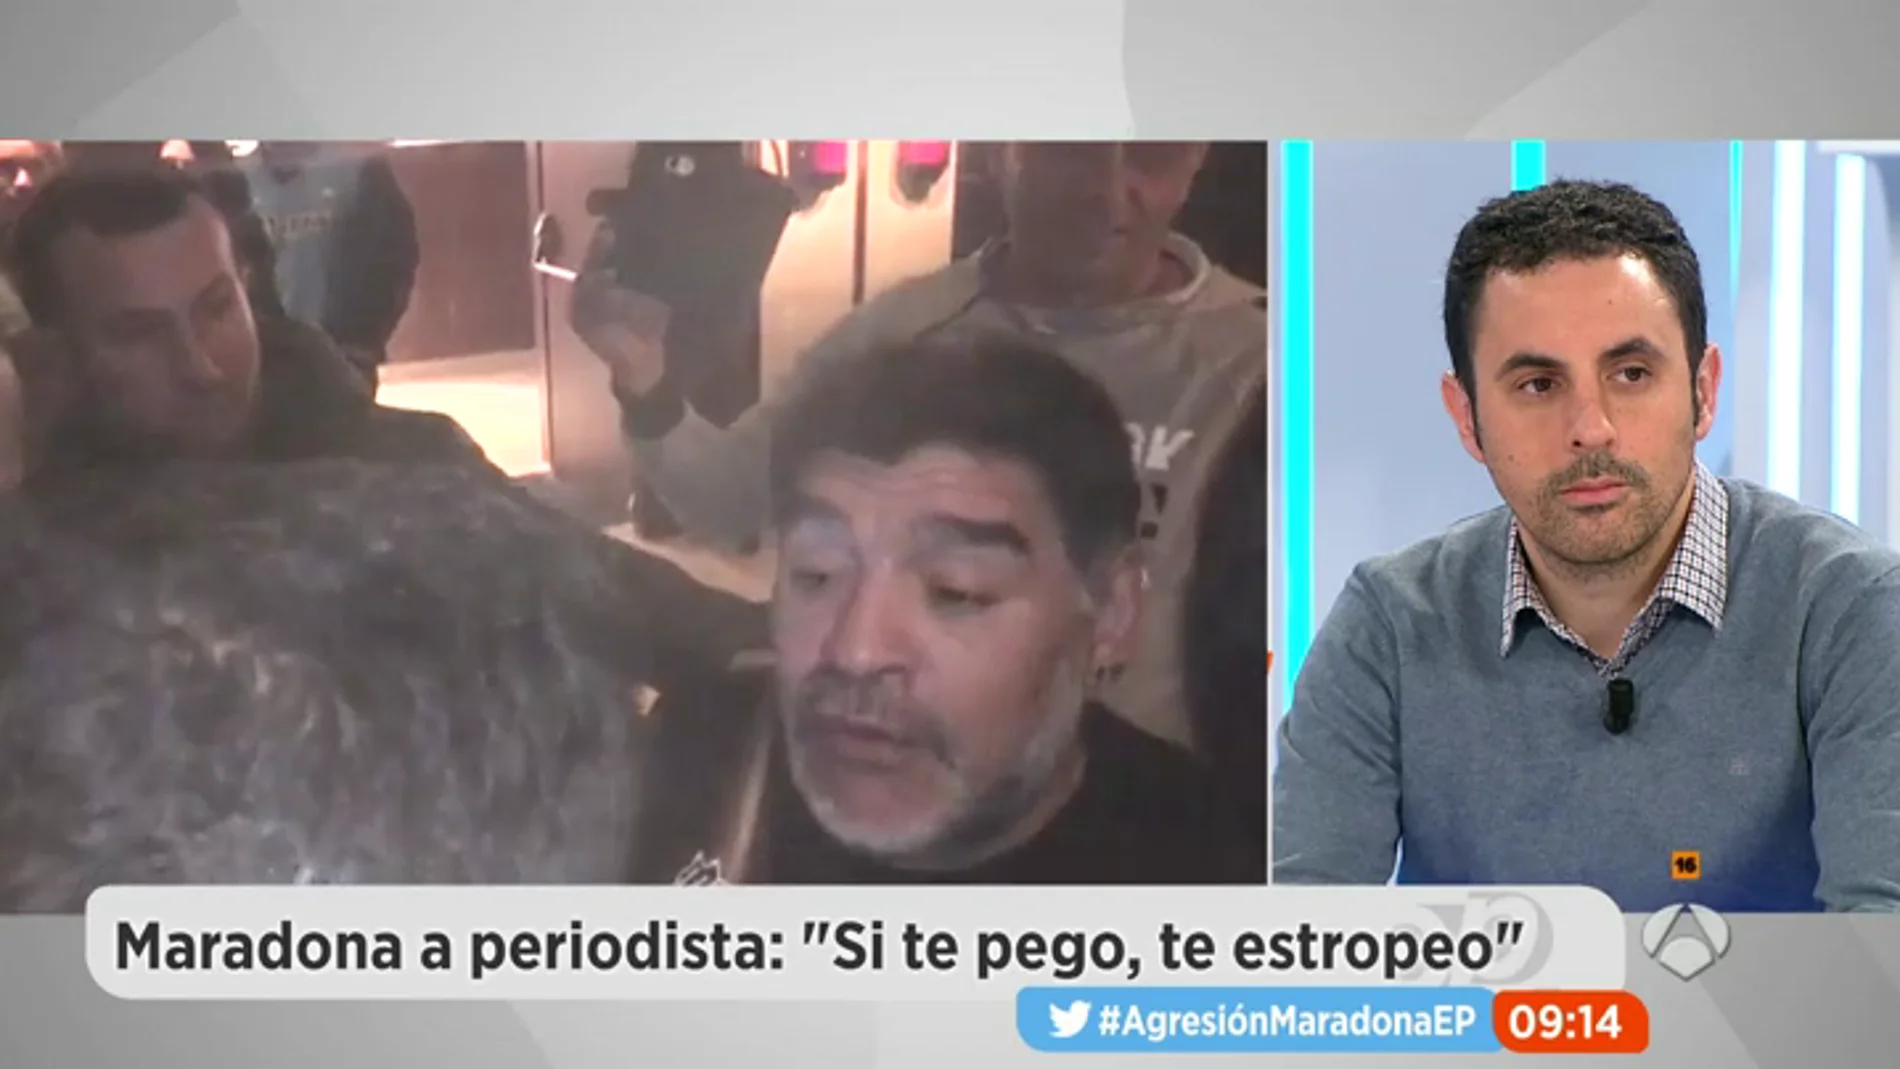 Frame 56.196972 de: Hablamos con el periodista agredido por Maradona: "Nadie se ha disculpado ni lo esperaba"